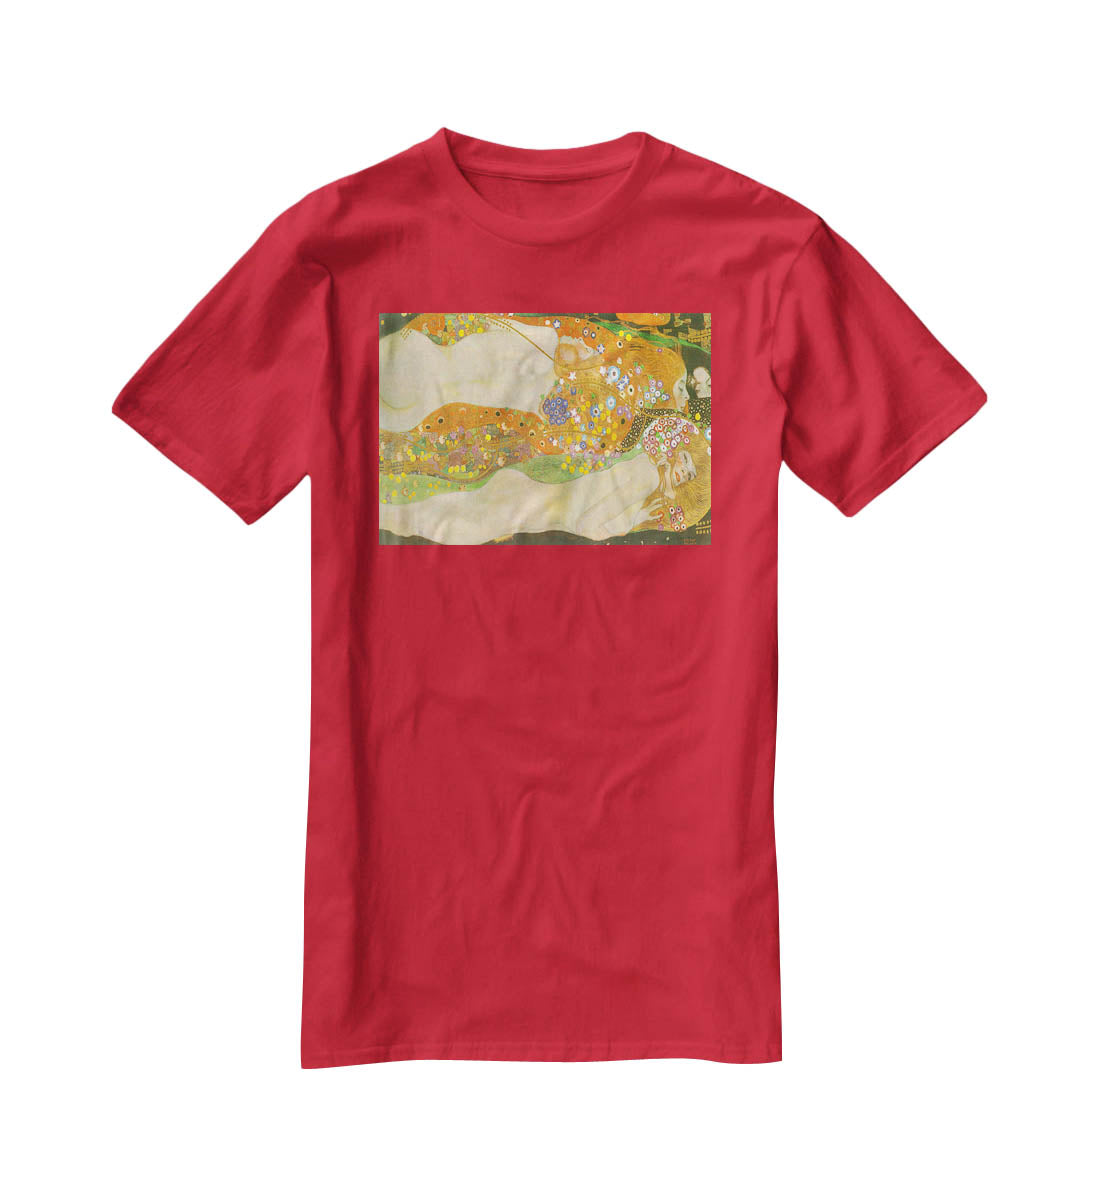 Water snakes friends II by Klimt T-Shirt - Canvas Art Rocks - 4